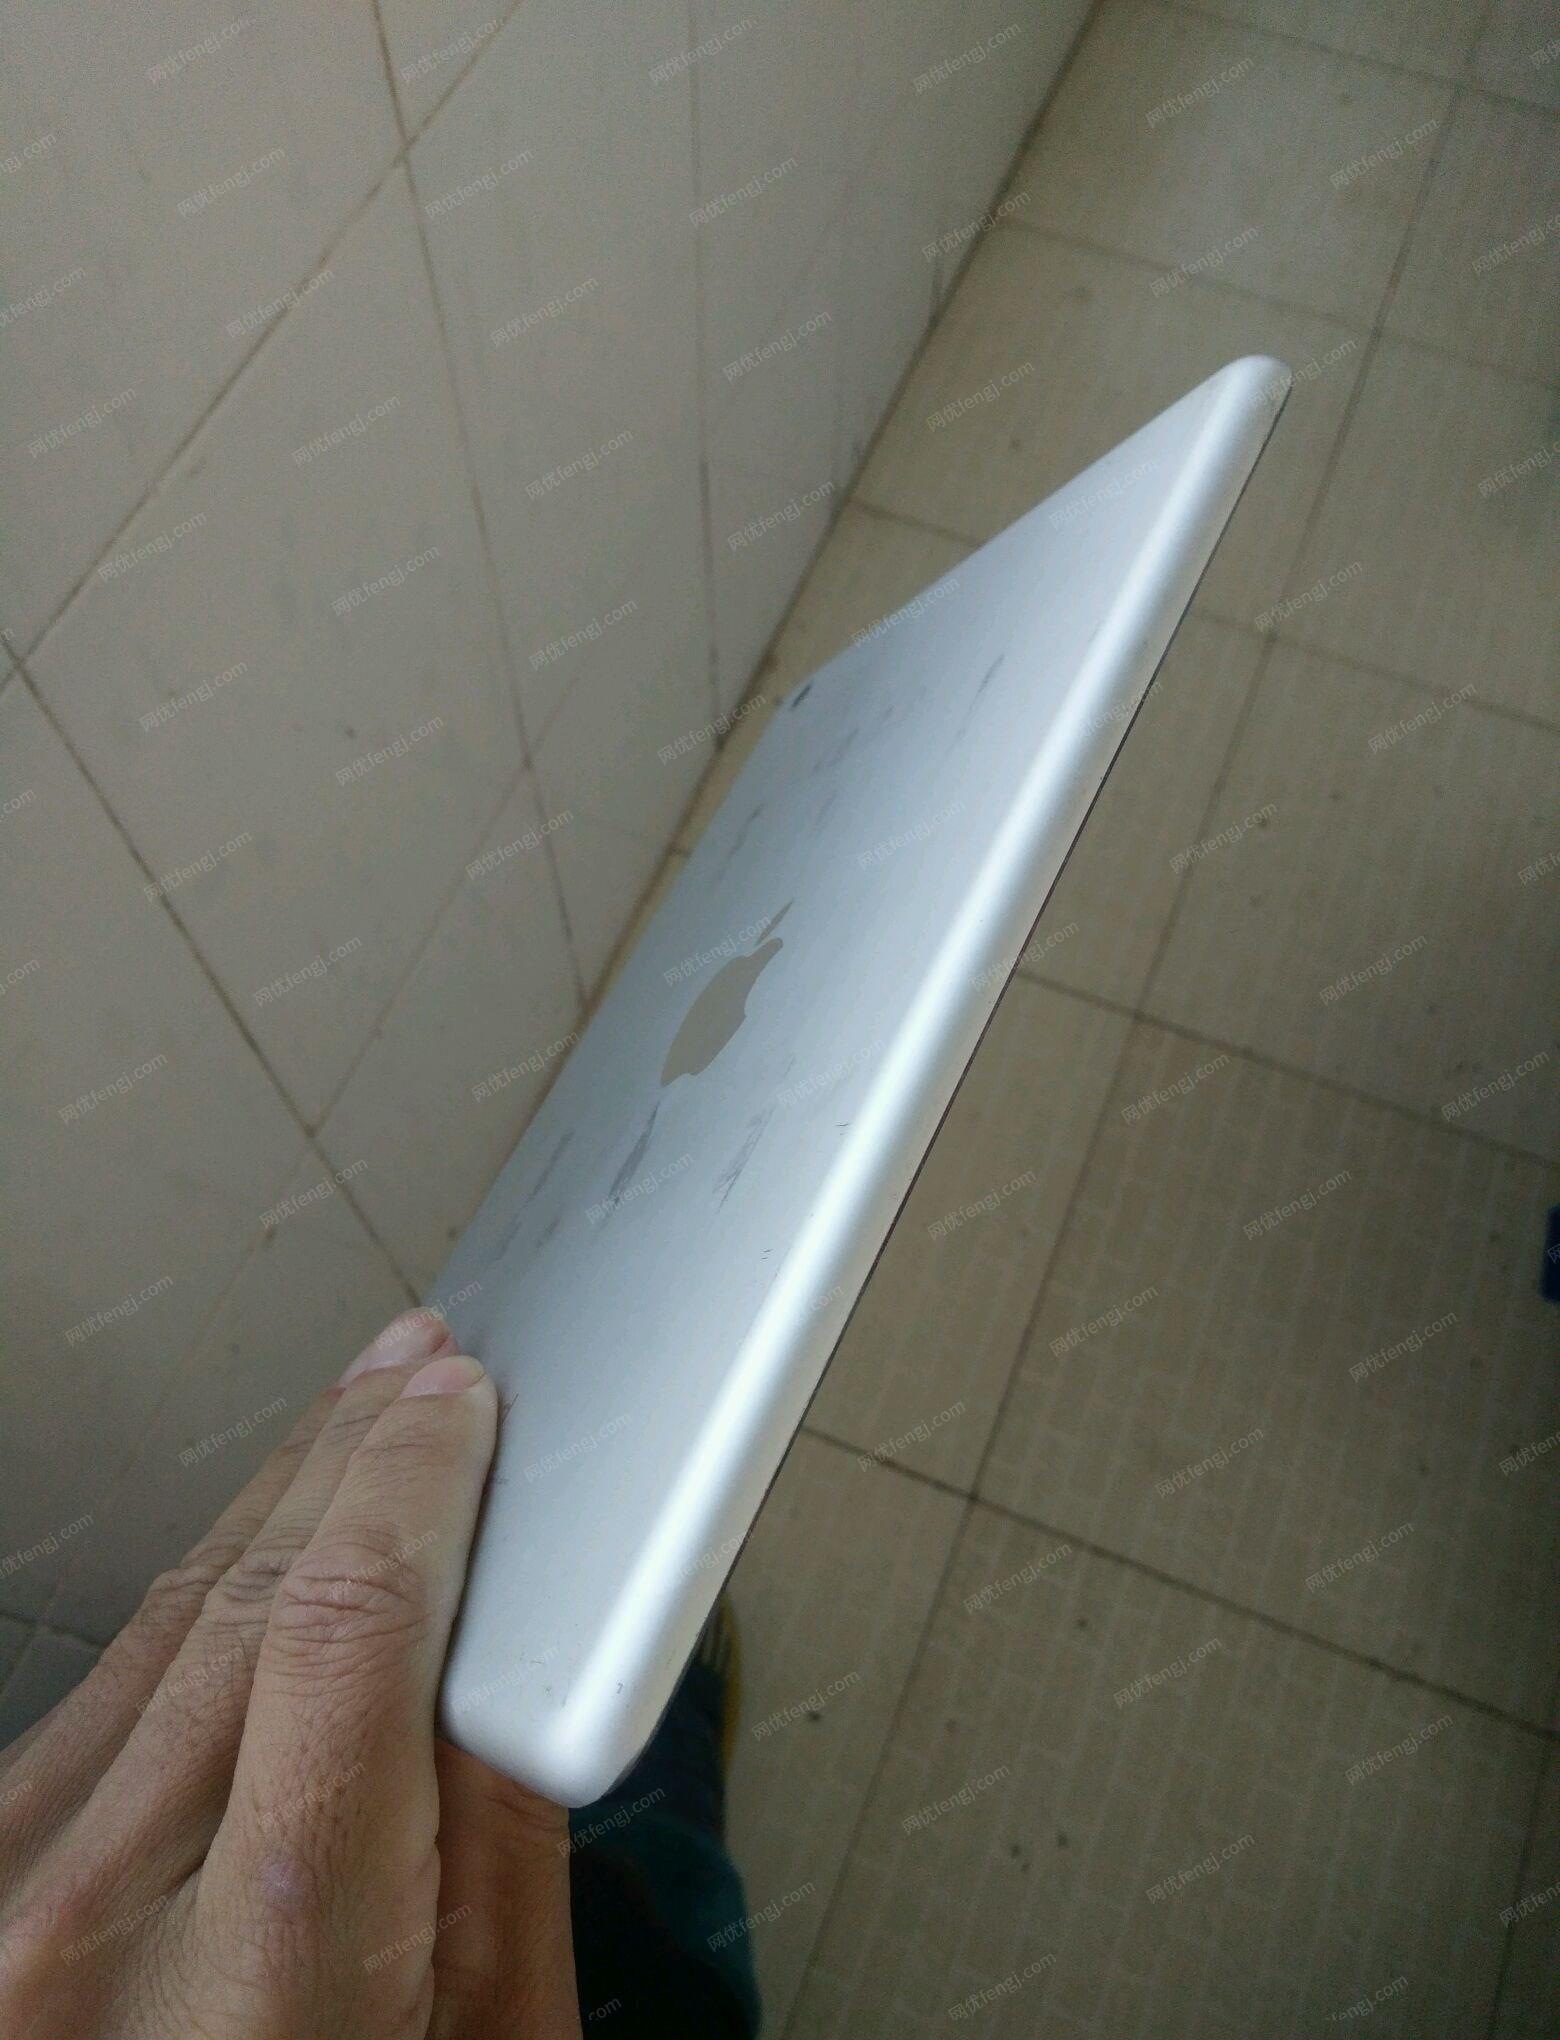 云南昆明苹果平板mini2，16G出售